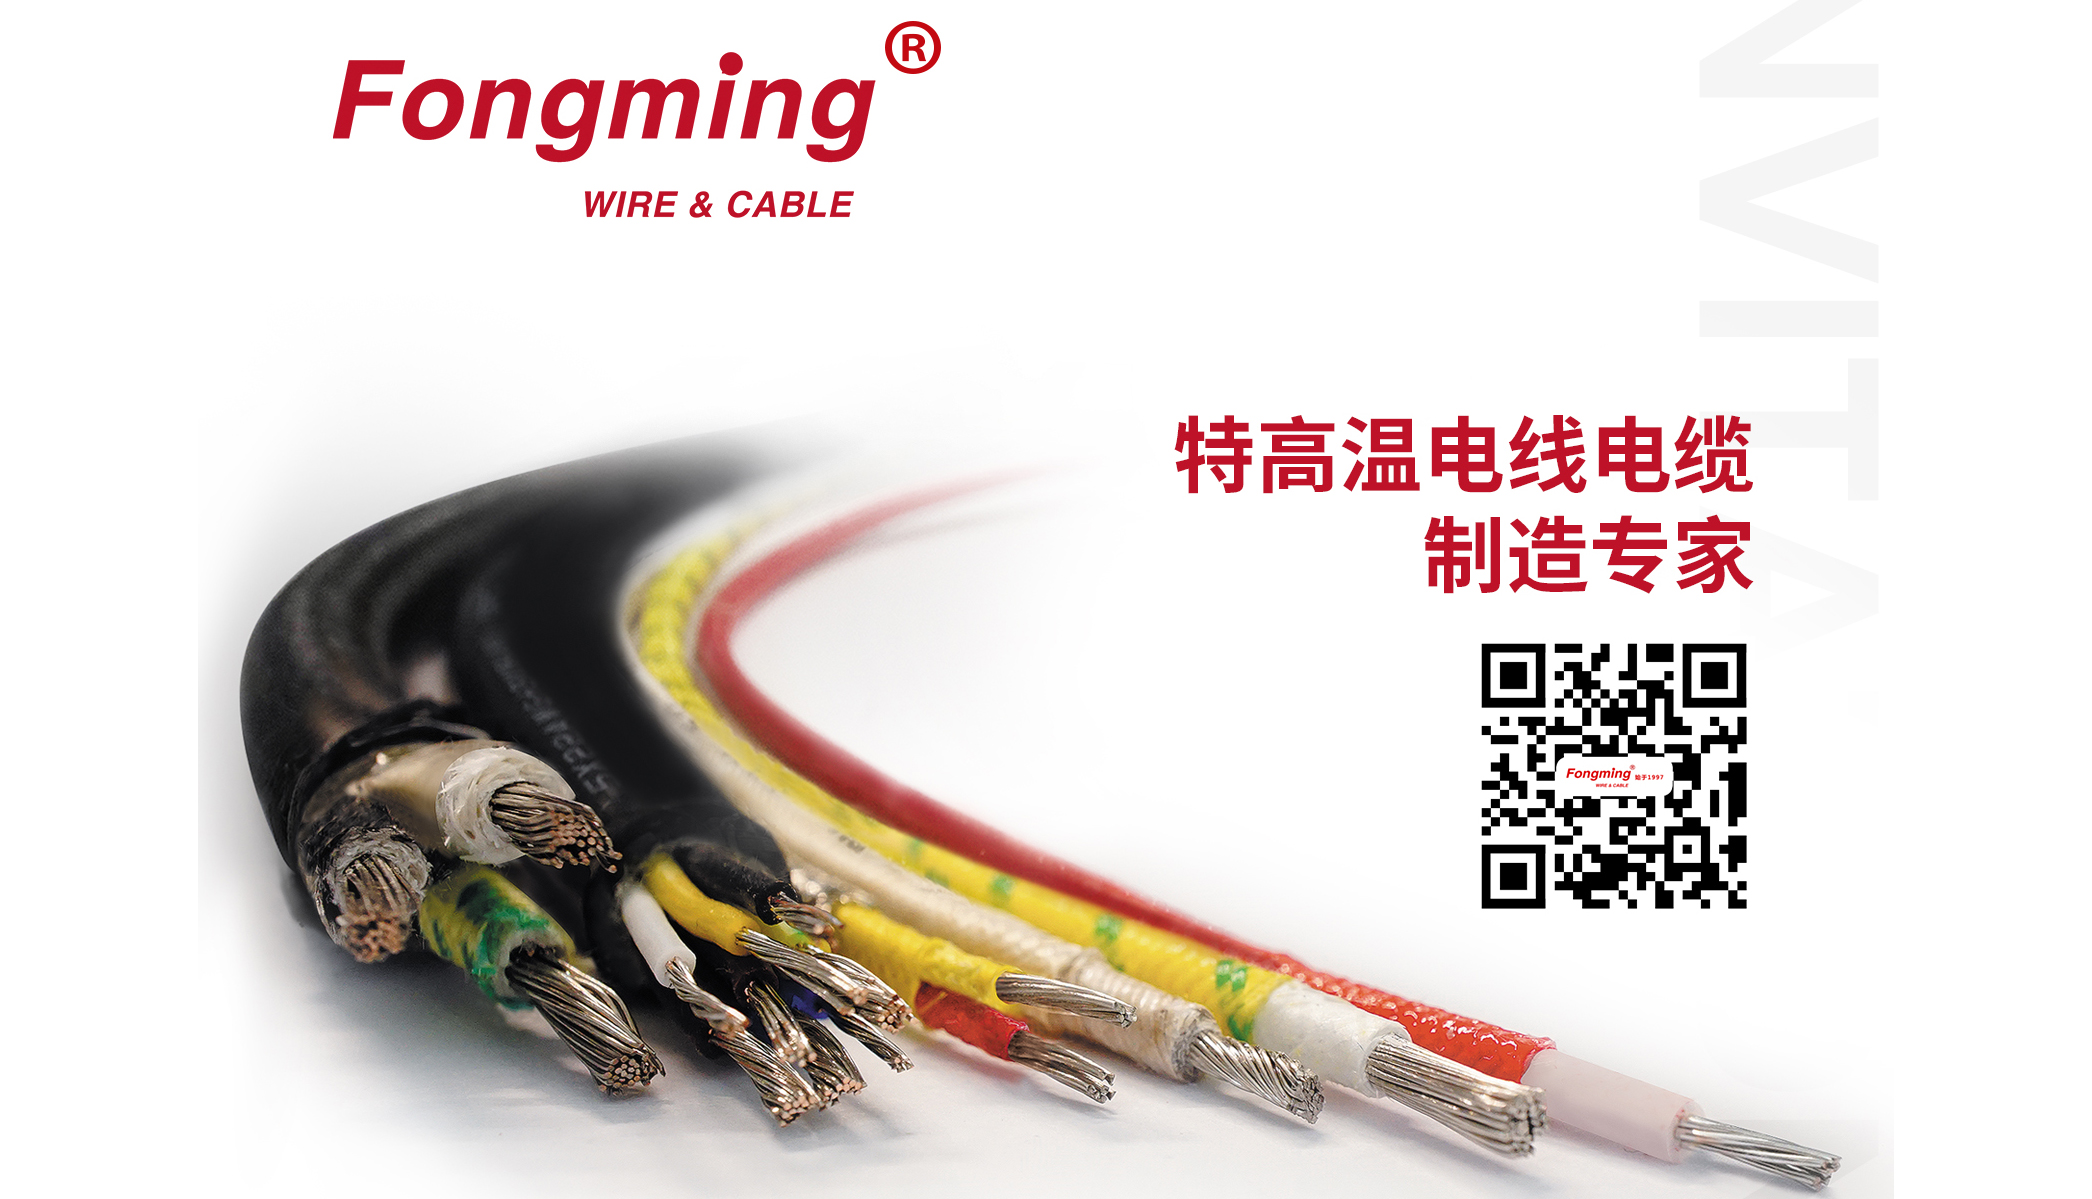 Fongming Cable 丨La diferencia entre el cable resistente a altas temperaturas y el cable ignífugo